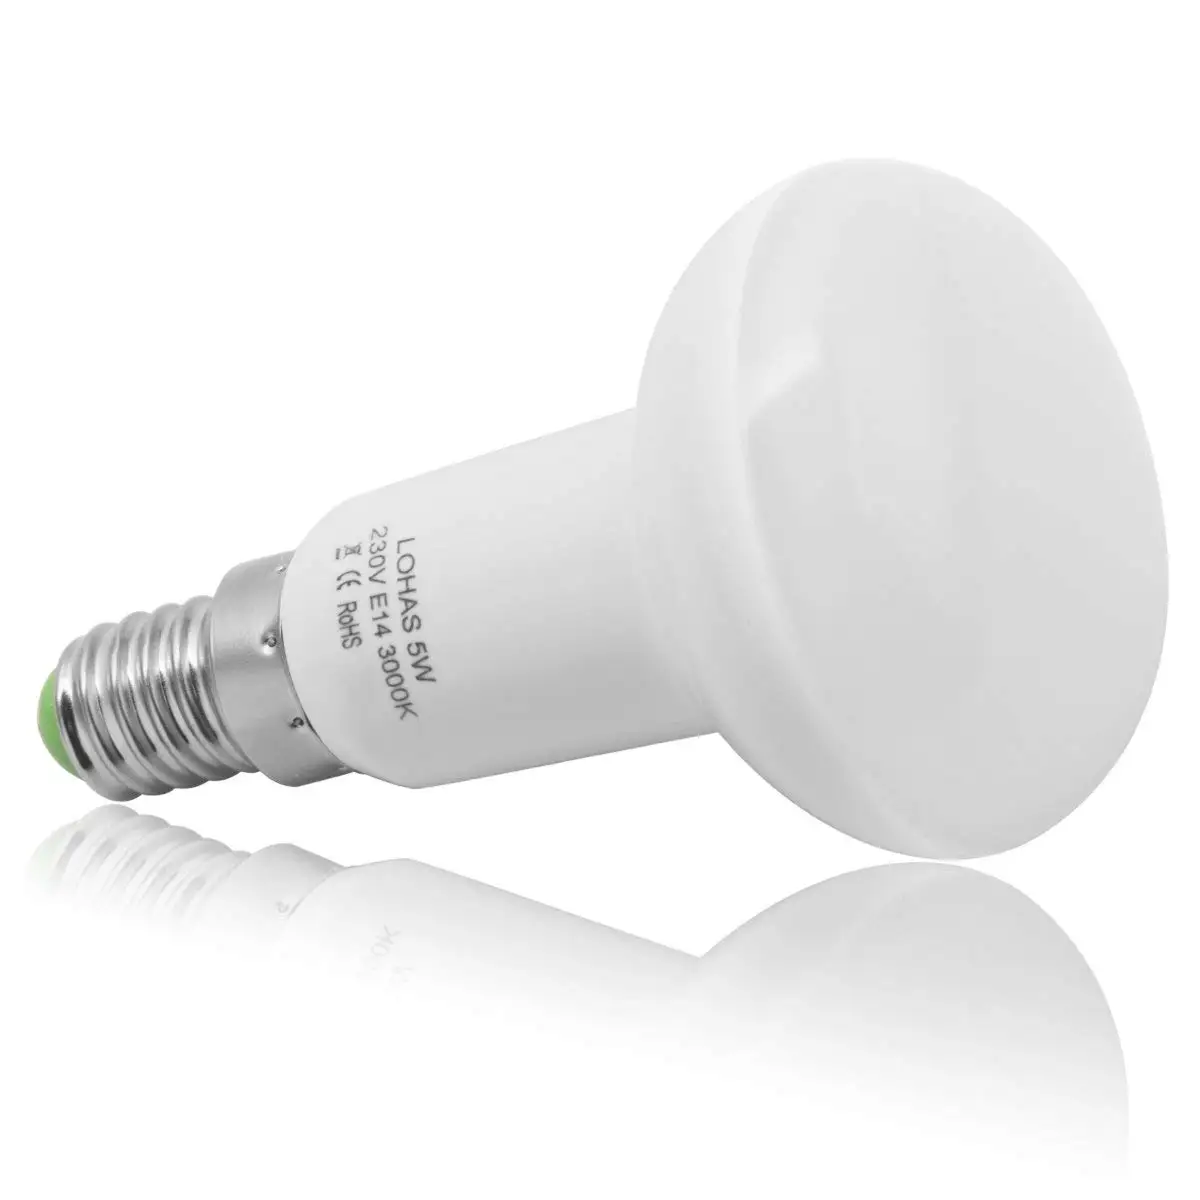 2x 6W R50 Reflector Spot Light LED E14 SES Daylight White 6500K light Bulb Lamp 